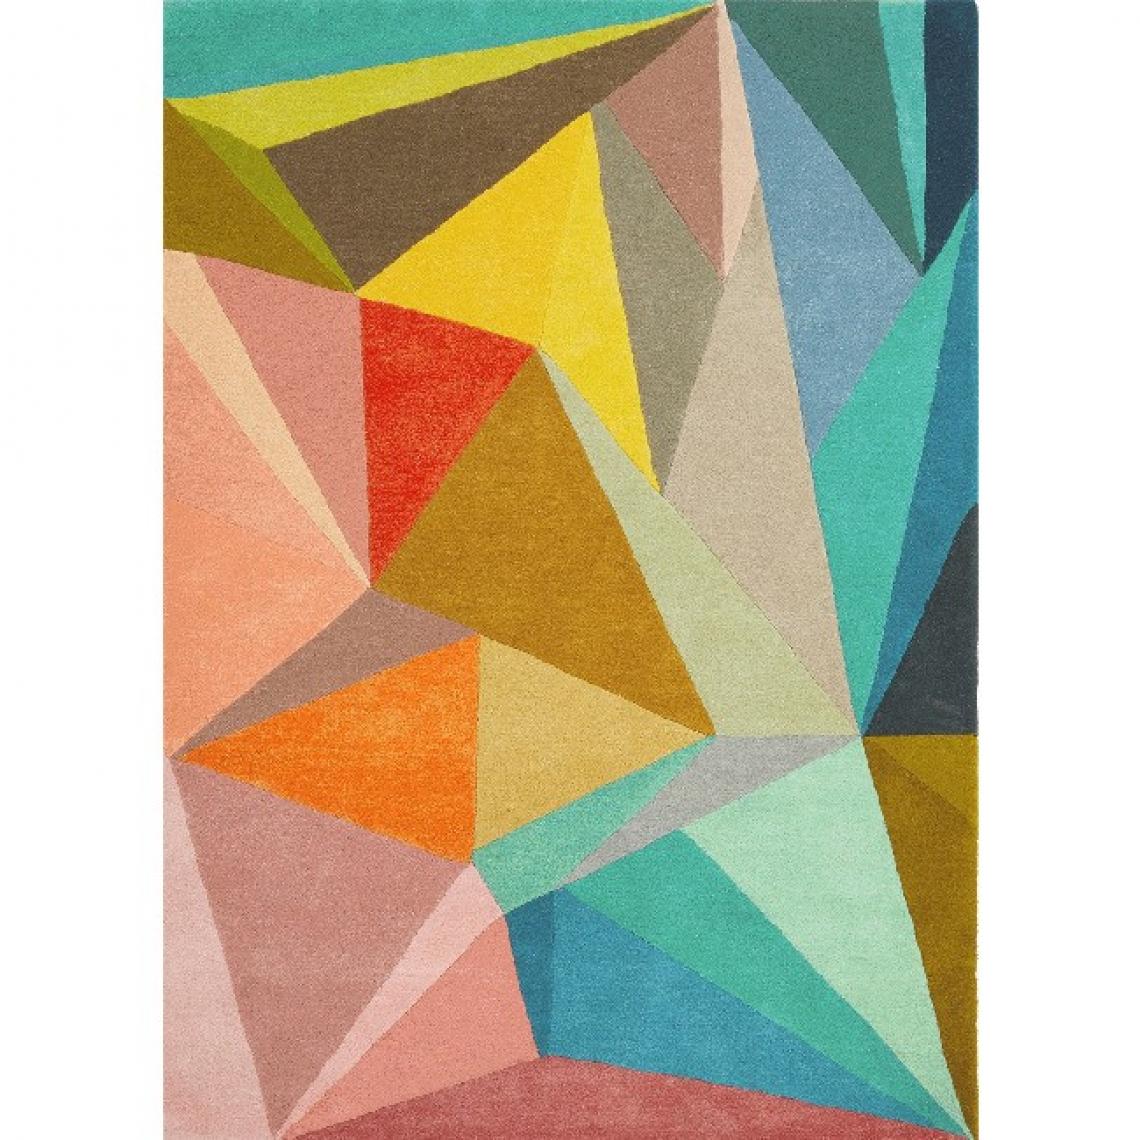 Homemania - HOMEMANIA Tapis décoratif Colour Explosion - Multicouleur - 180 x 280 cm - Tapis